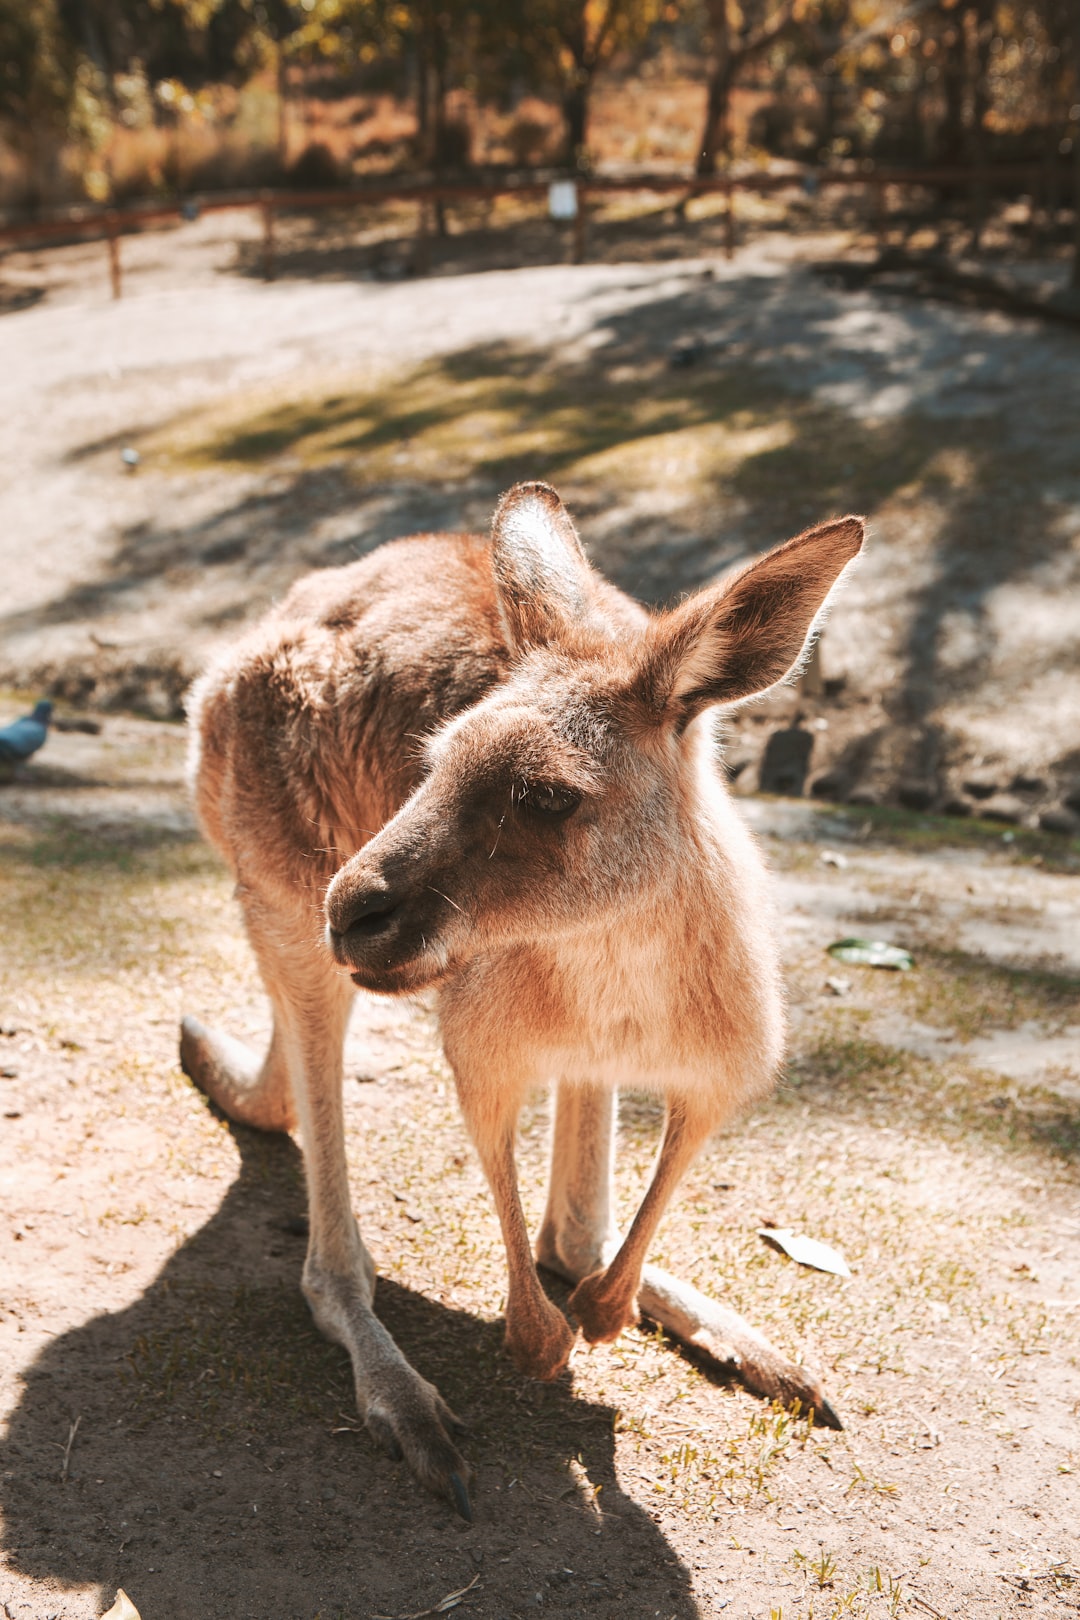 travelers stories about Wildlife in Brisbane, Australia